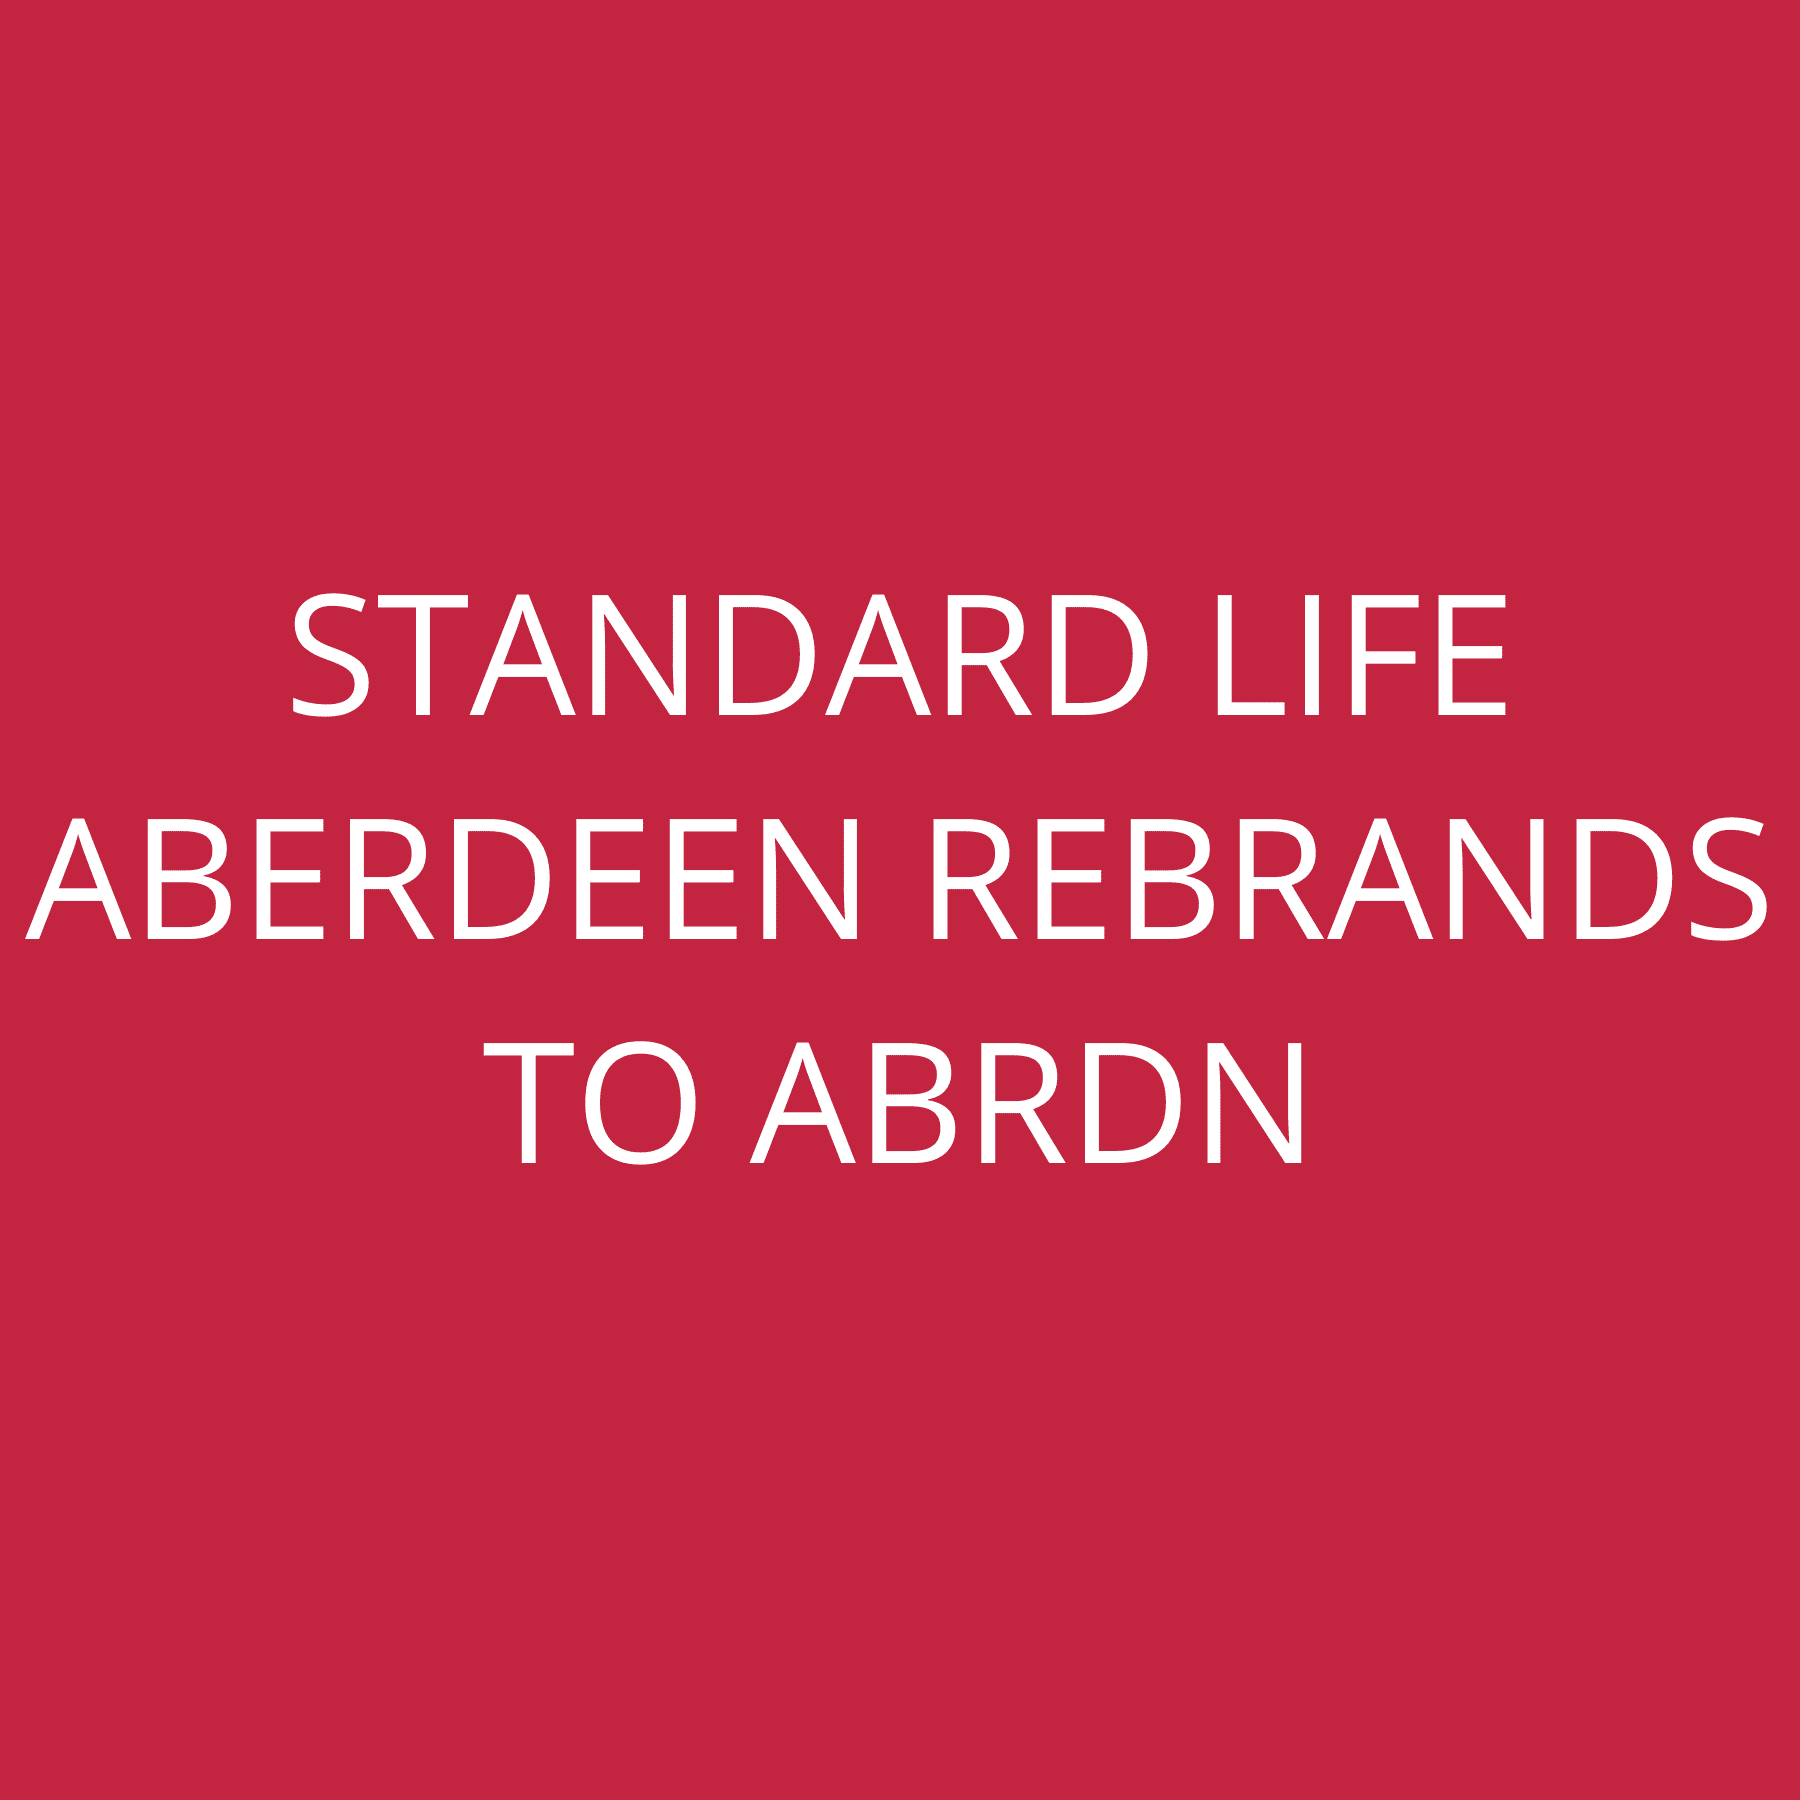 Standard Life Aberdeen rebrands to abrdn